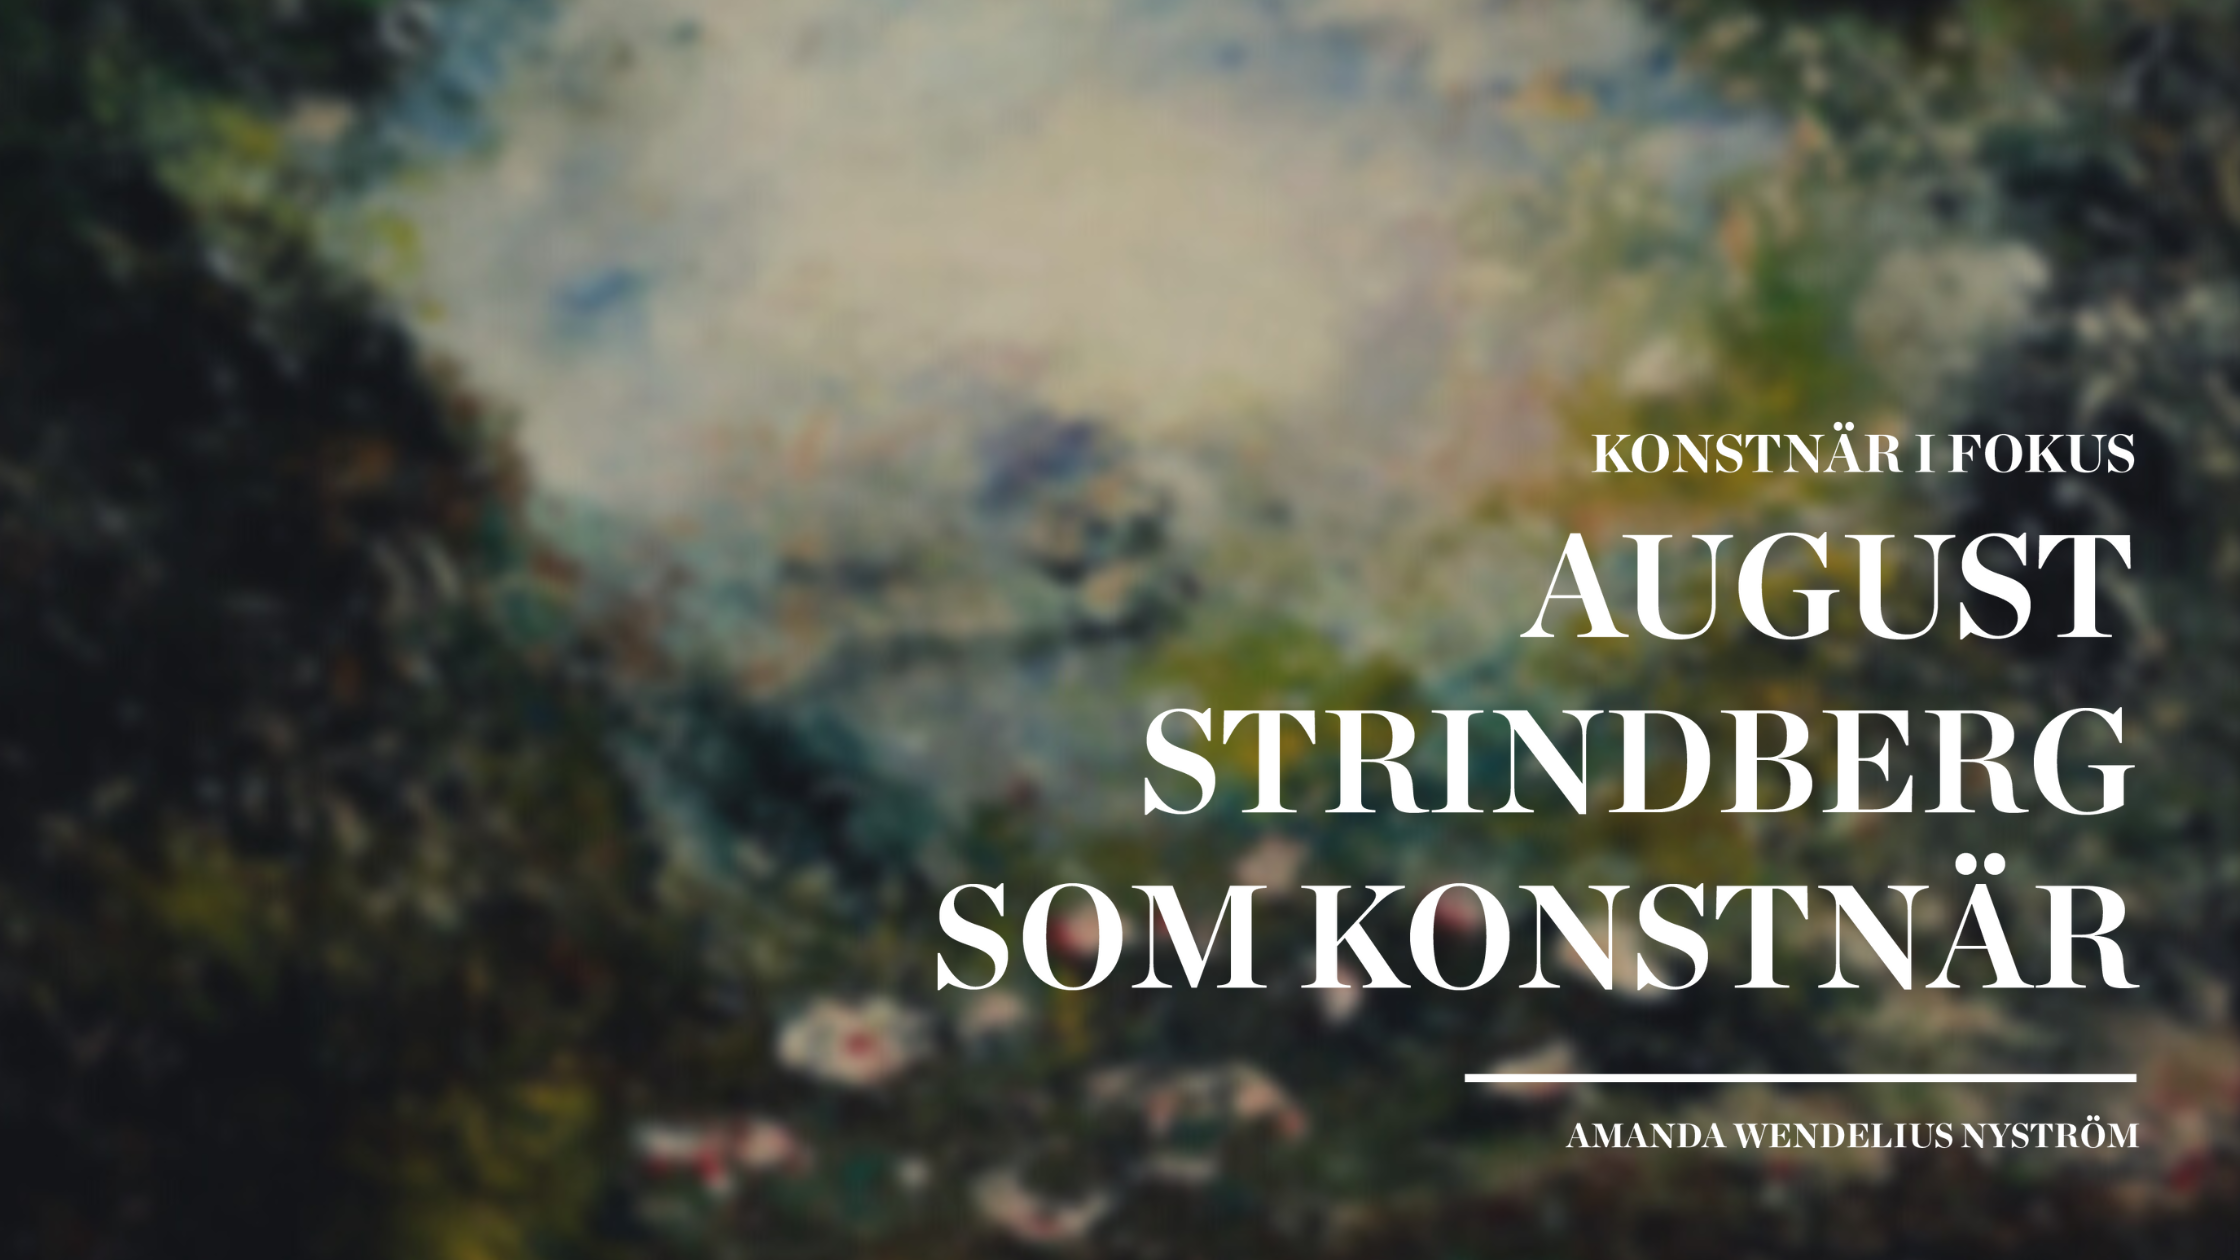 August Strindberg som konstnär, en text av Amanda Wendelius Nyström